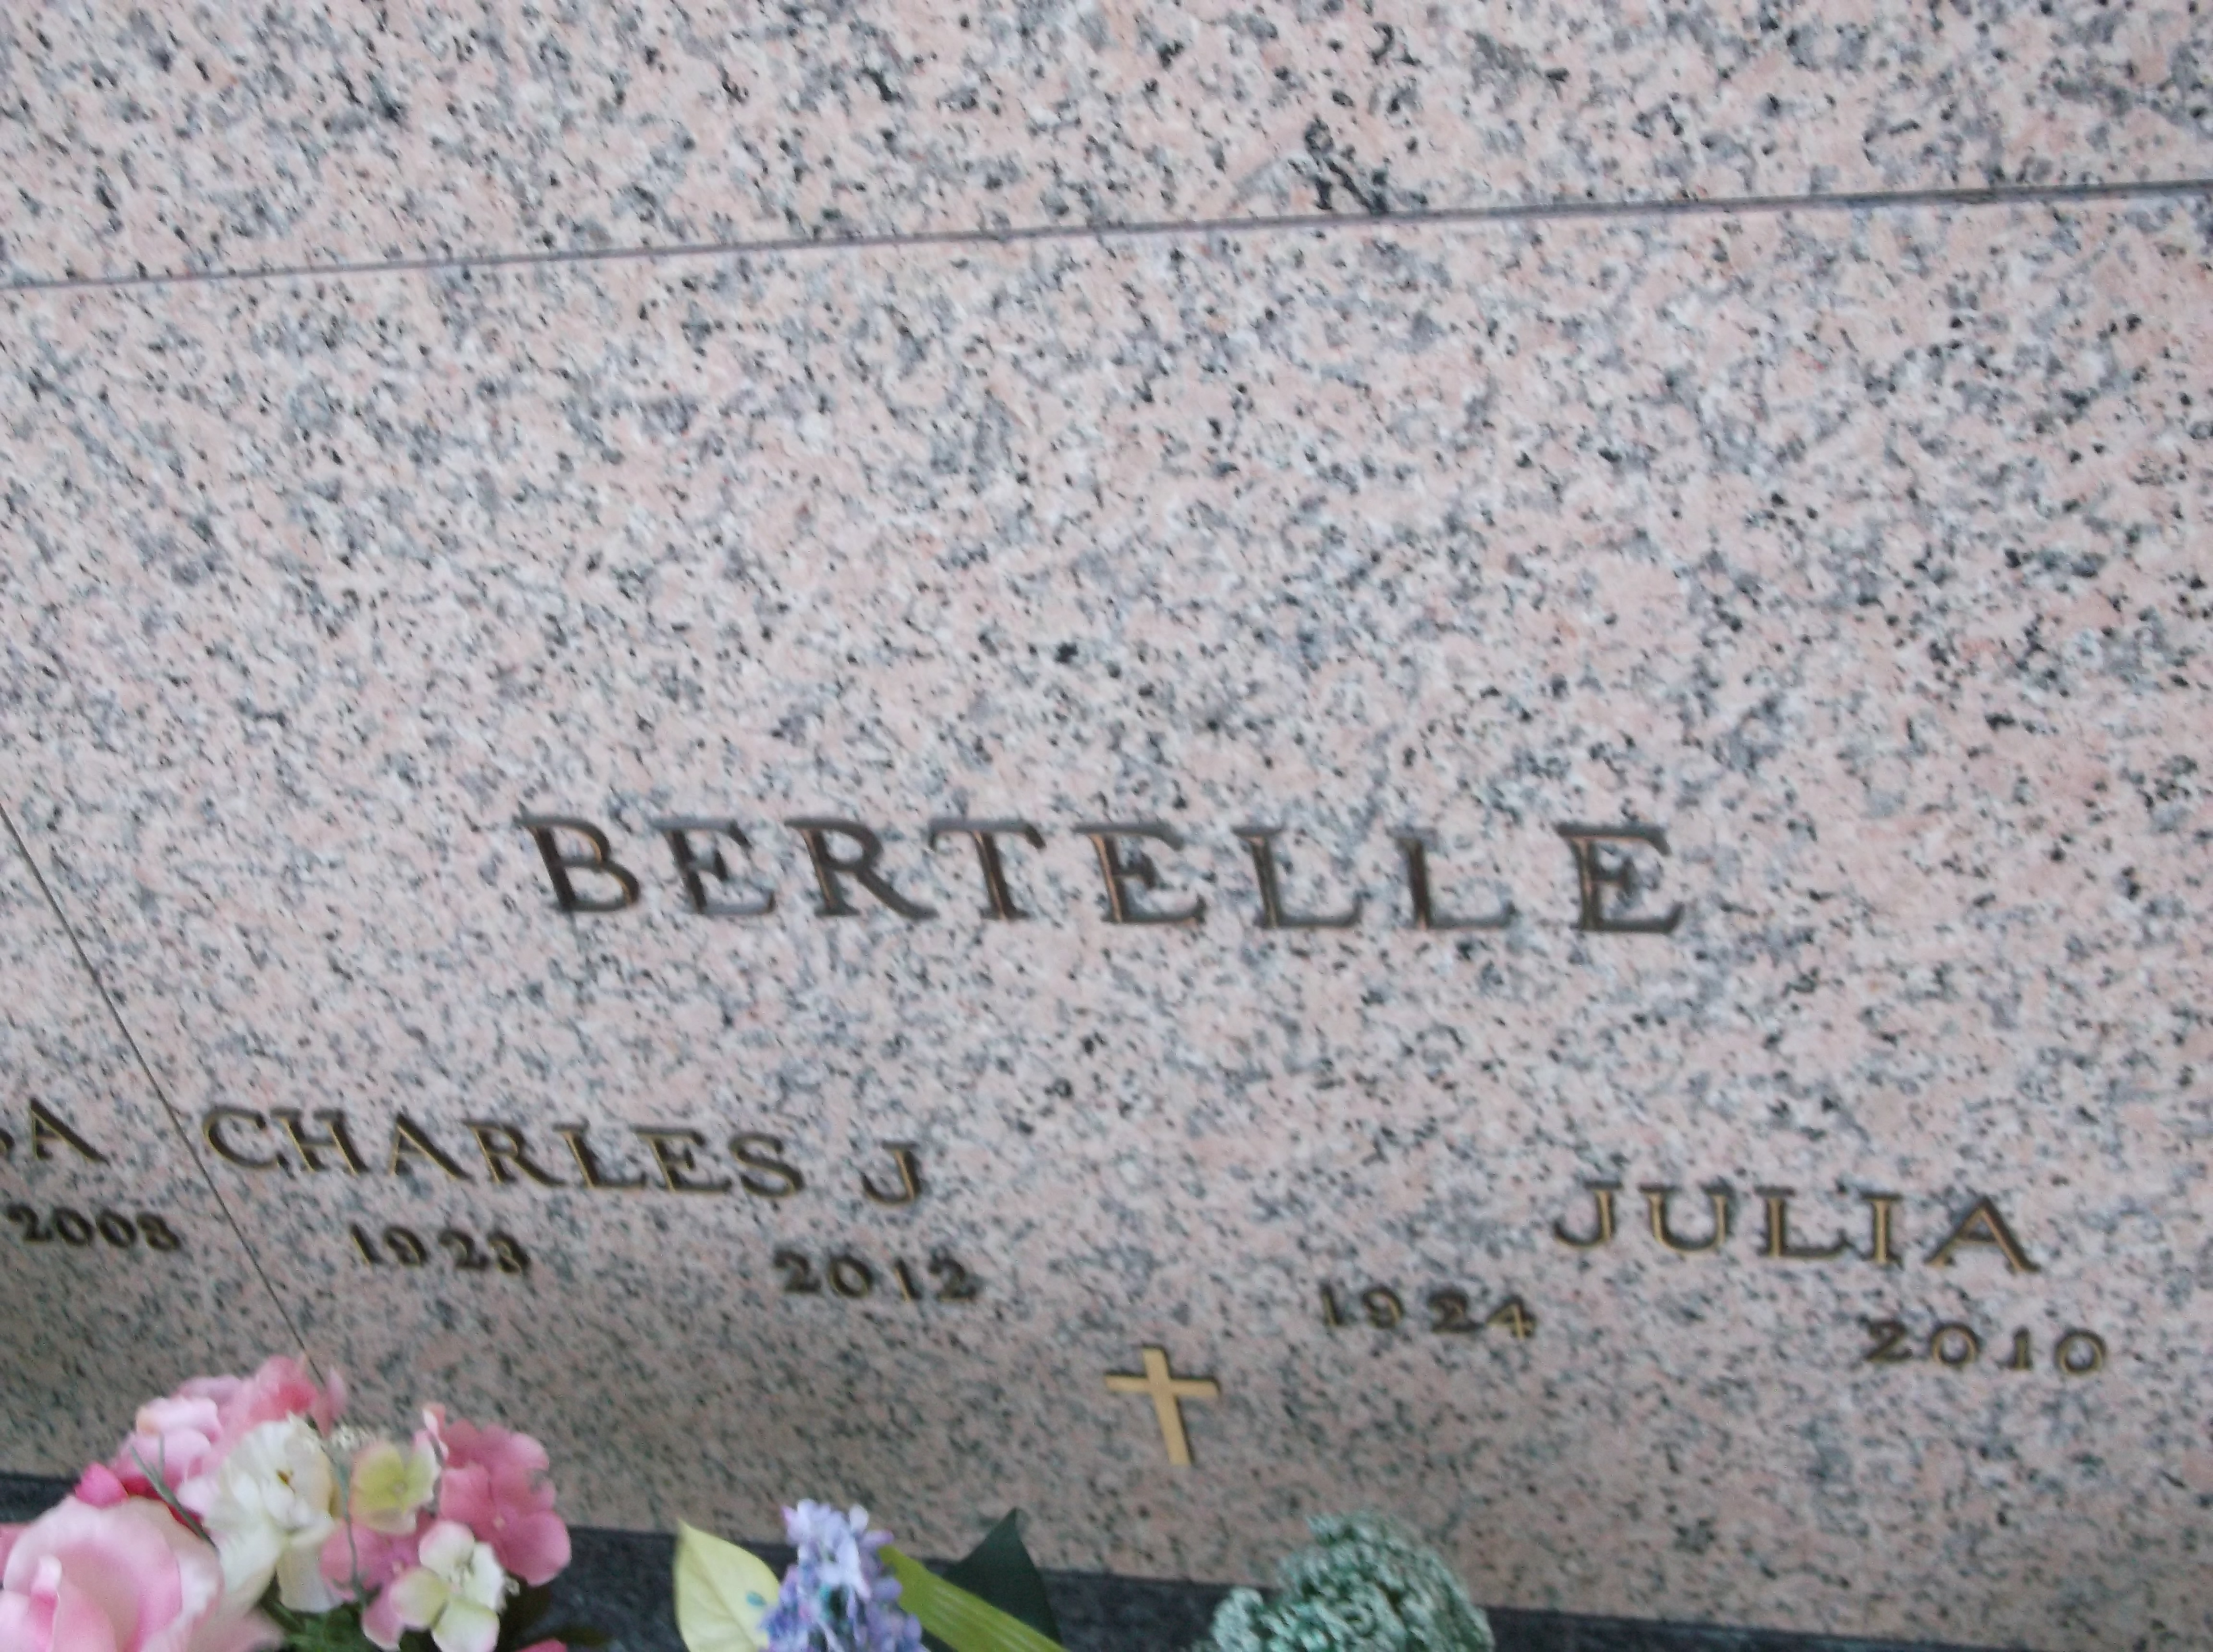 Charles J Bertelle